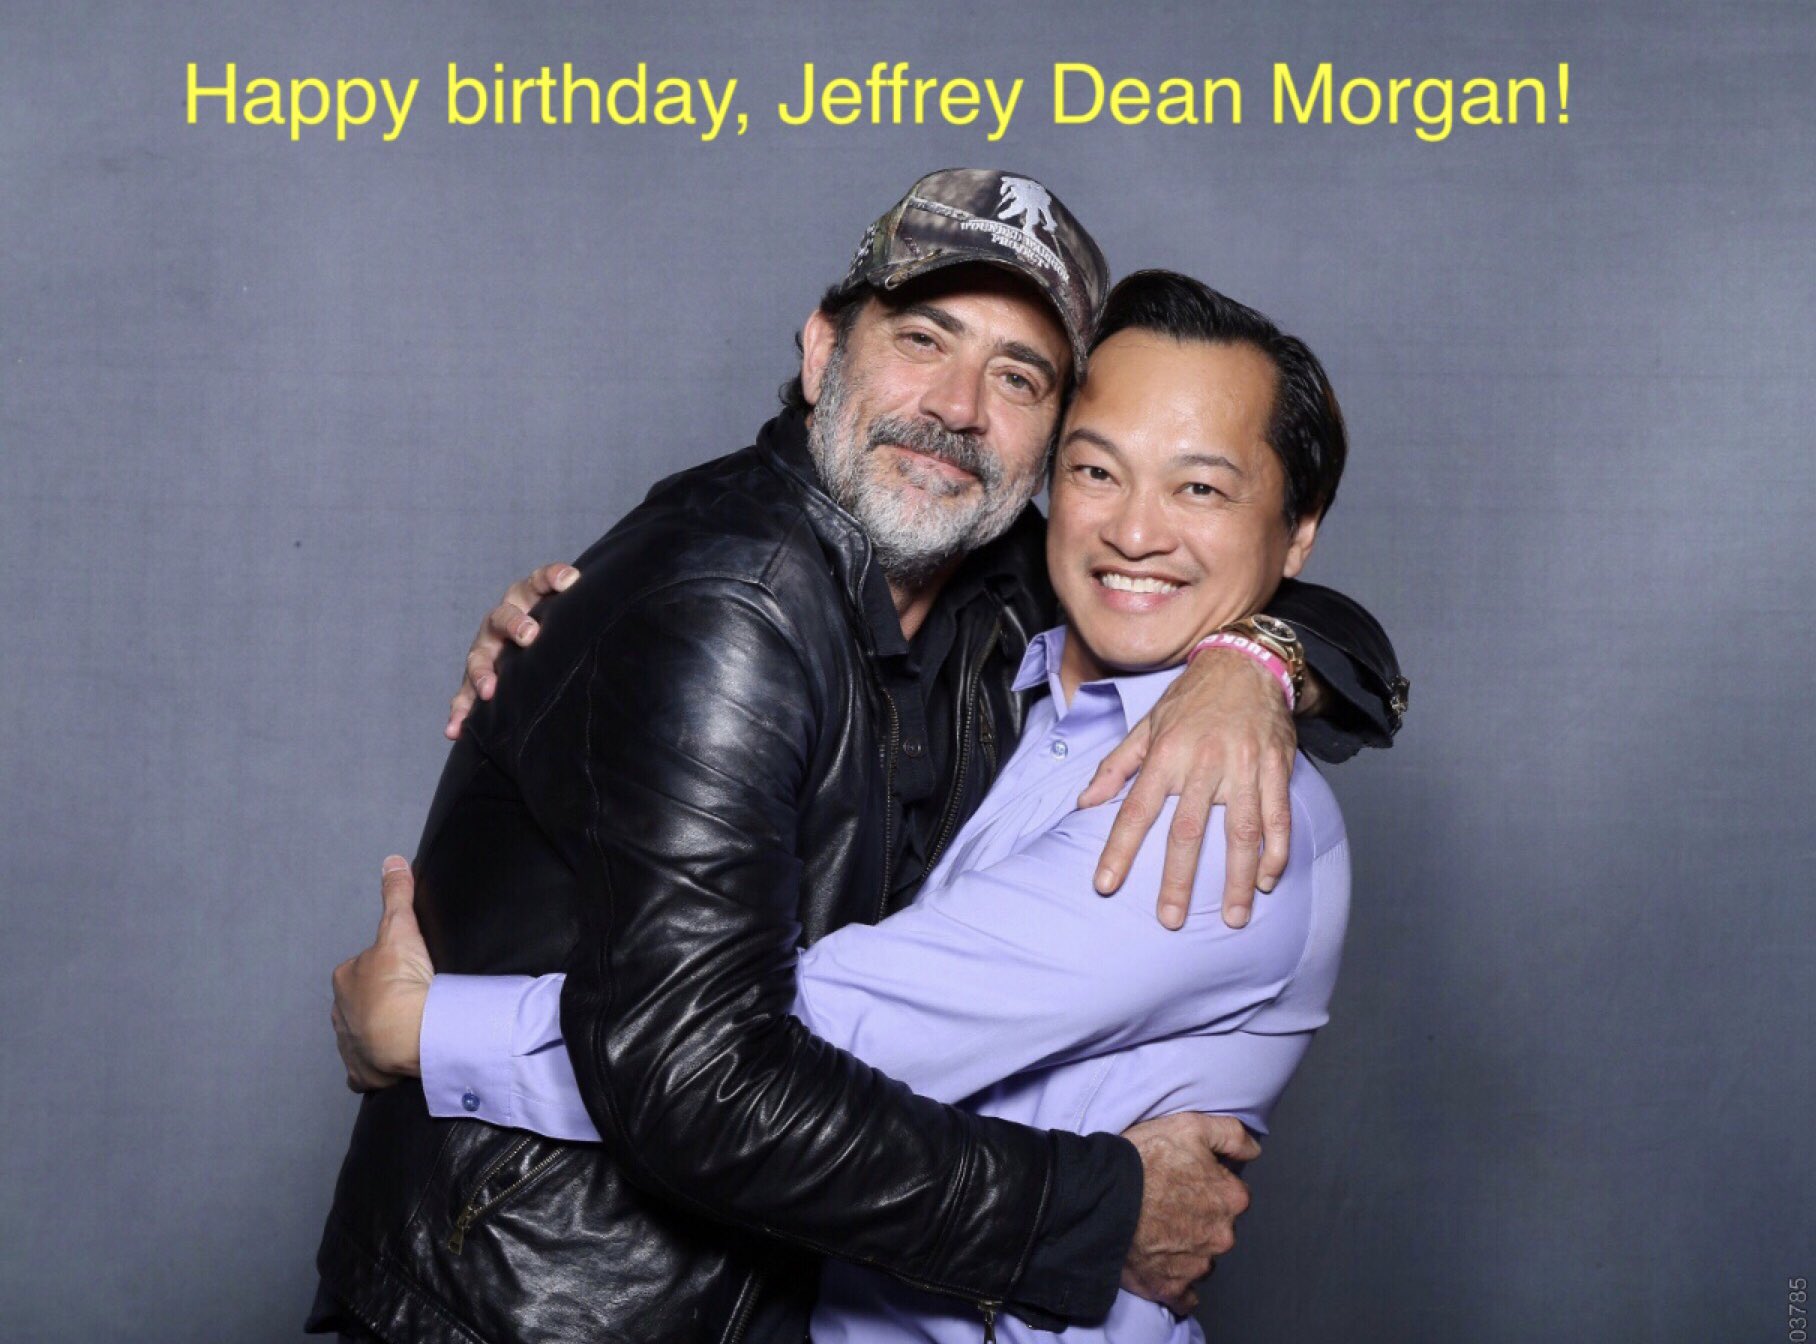 Happy birthday film and TV actor, Jeffrey Dean Morgan!  